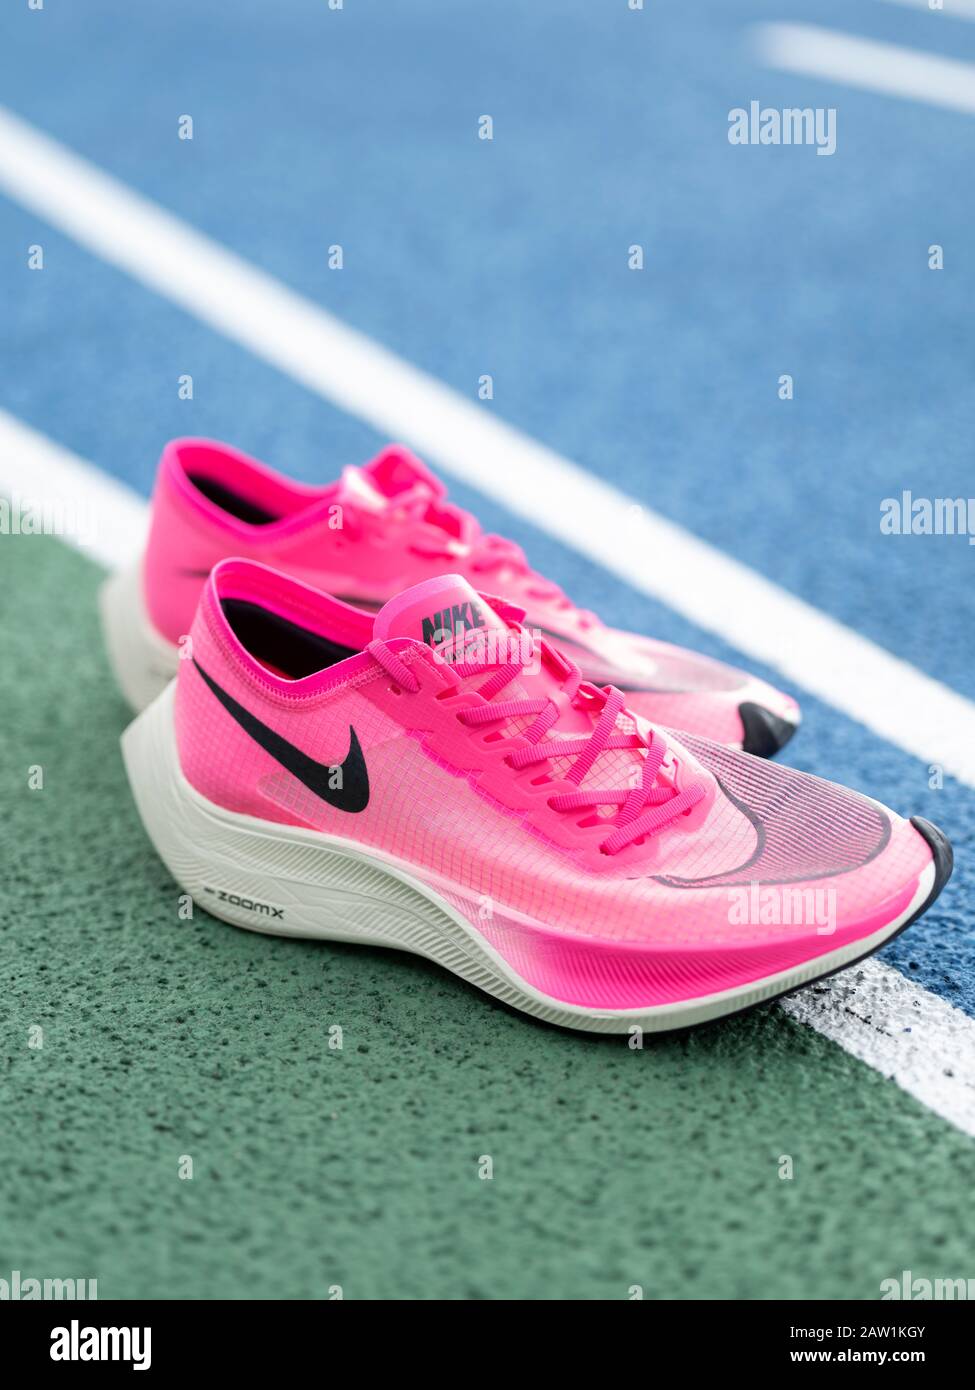 Las zapatillas de running Nike ZoomX Vaporfly Next% en color rosa (Rosa Blast/Guava Ice/Black) un aeroero de carbono que rompe récords Fotografía de stock Alamy